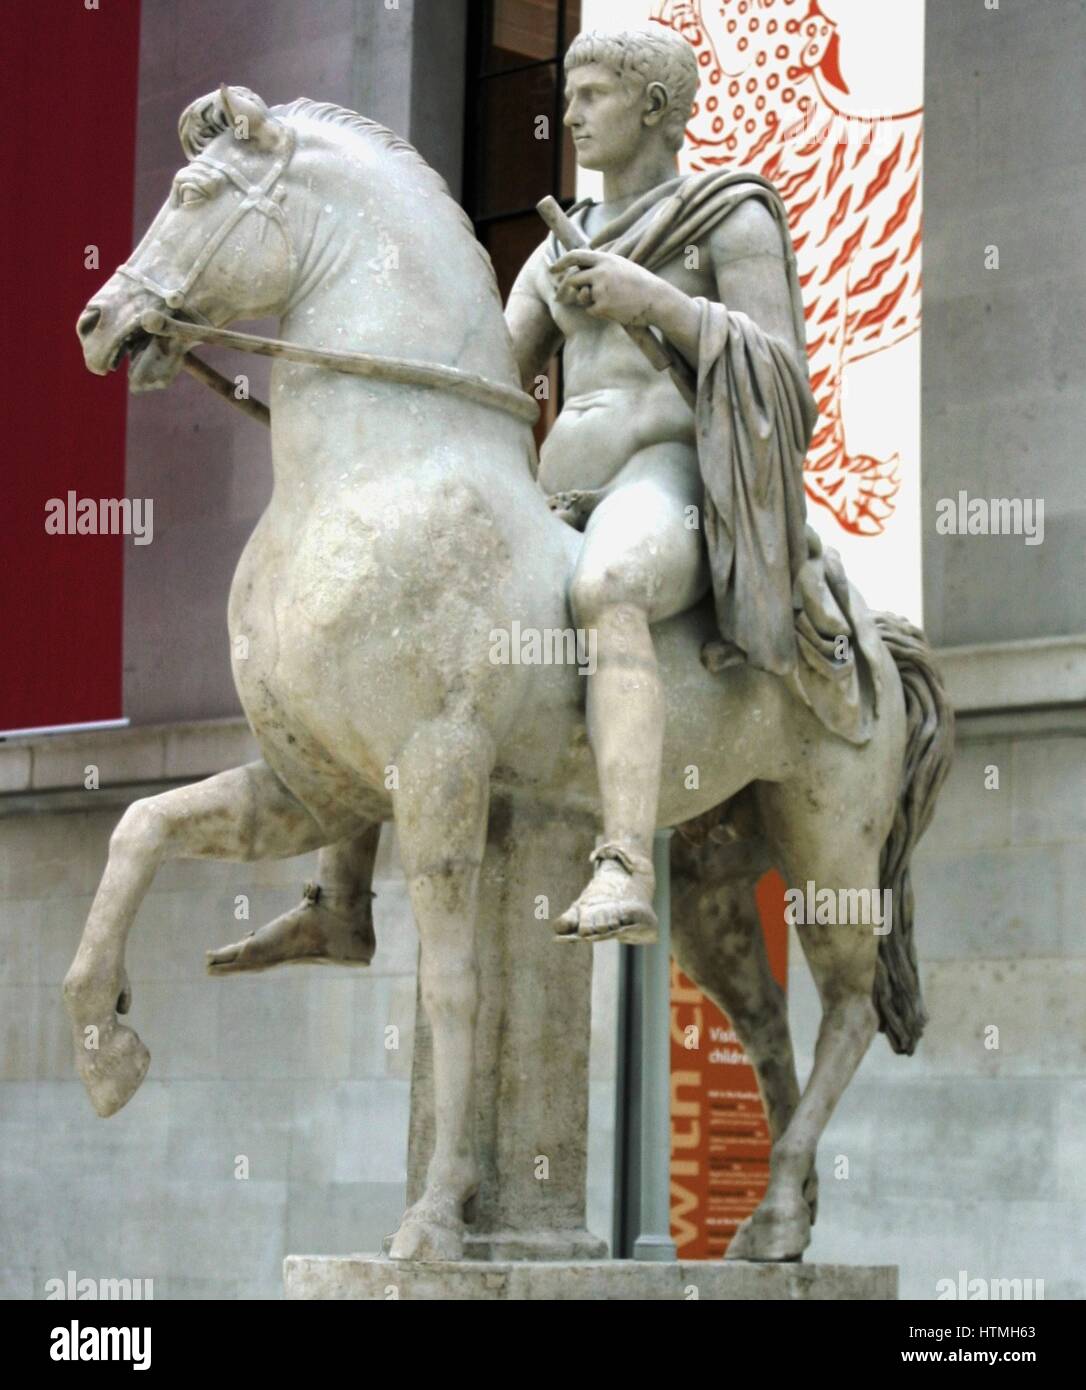 Statua in marmo di una gioventù a cavallo, romana, scolpiti in Italia. La scultura rappresenta forse un principe della romana famiglia imperiale. Foto Stock